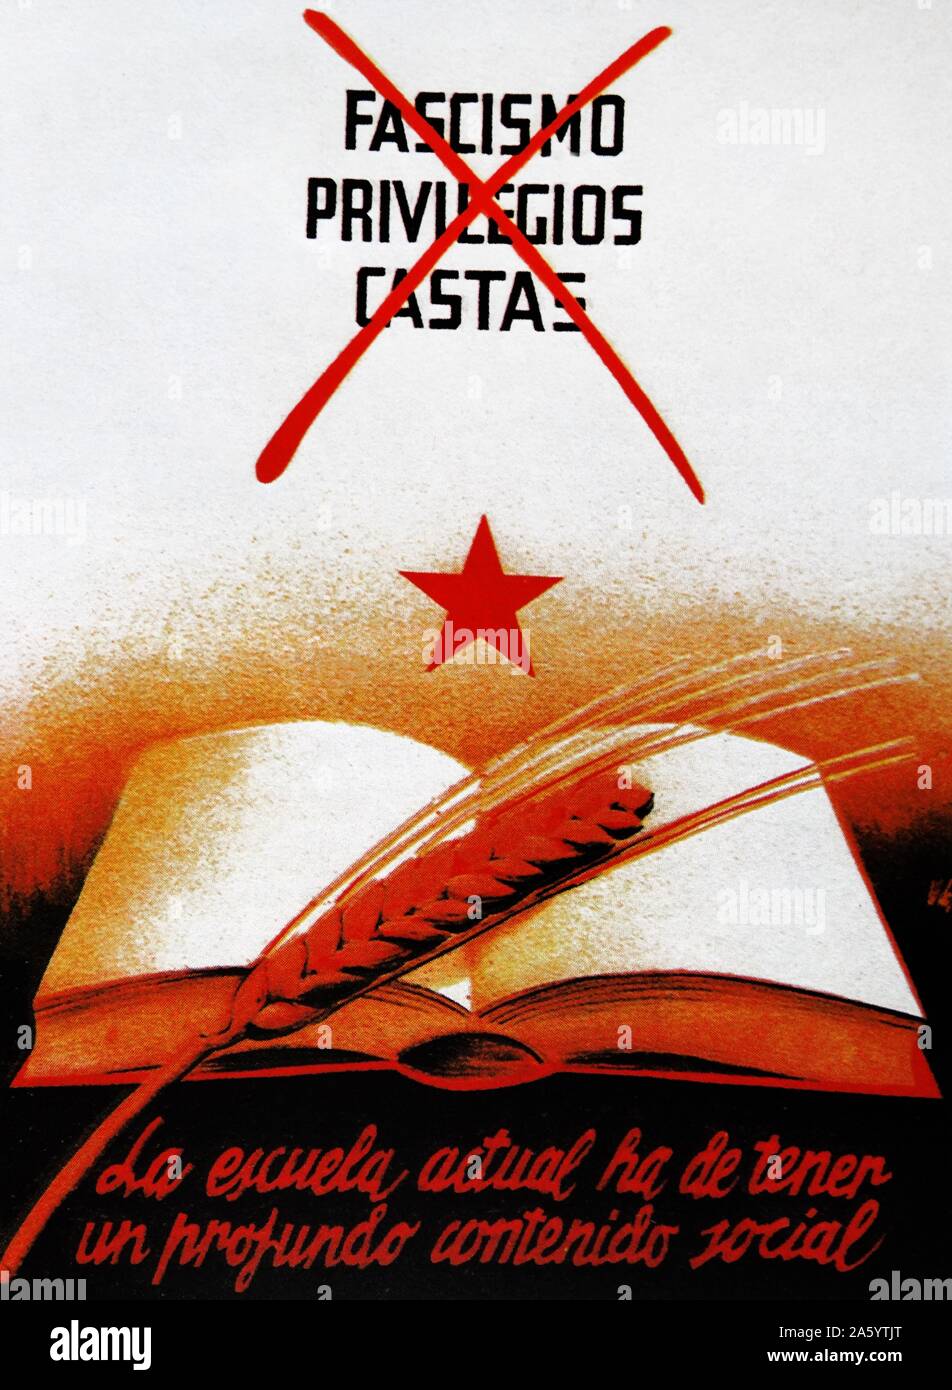 Affiche de propagande communiste espagnol, critiquant le fascisme, Privilège et de classe, pendant la guerre civile espagnole Banque D'Images